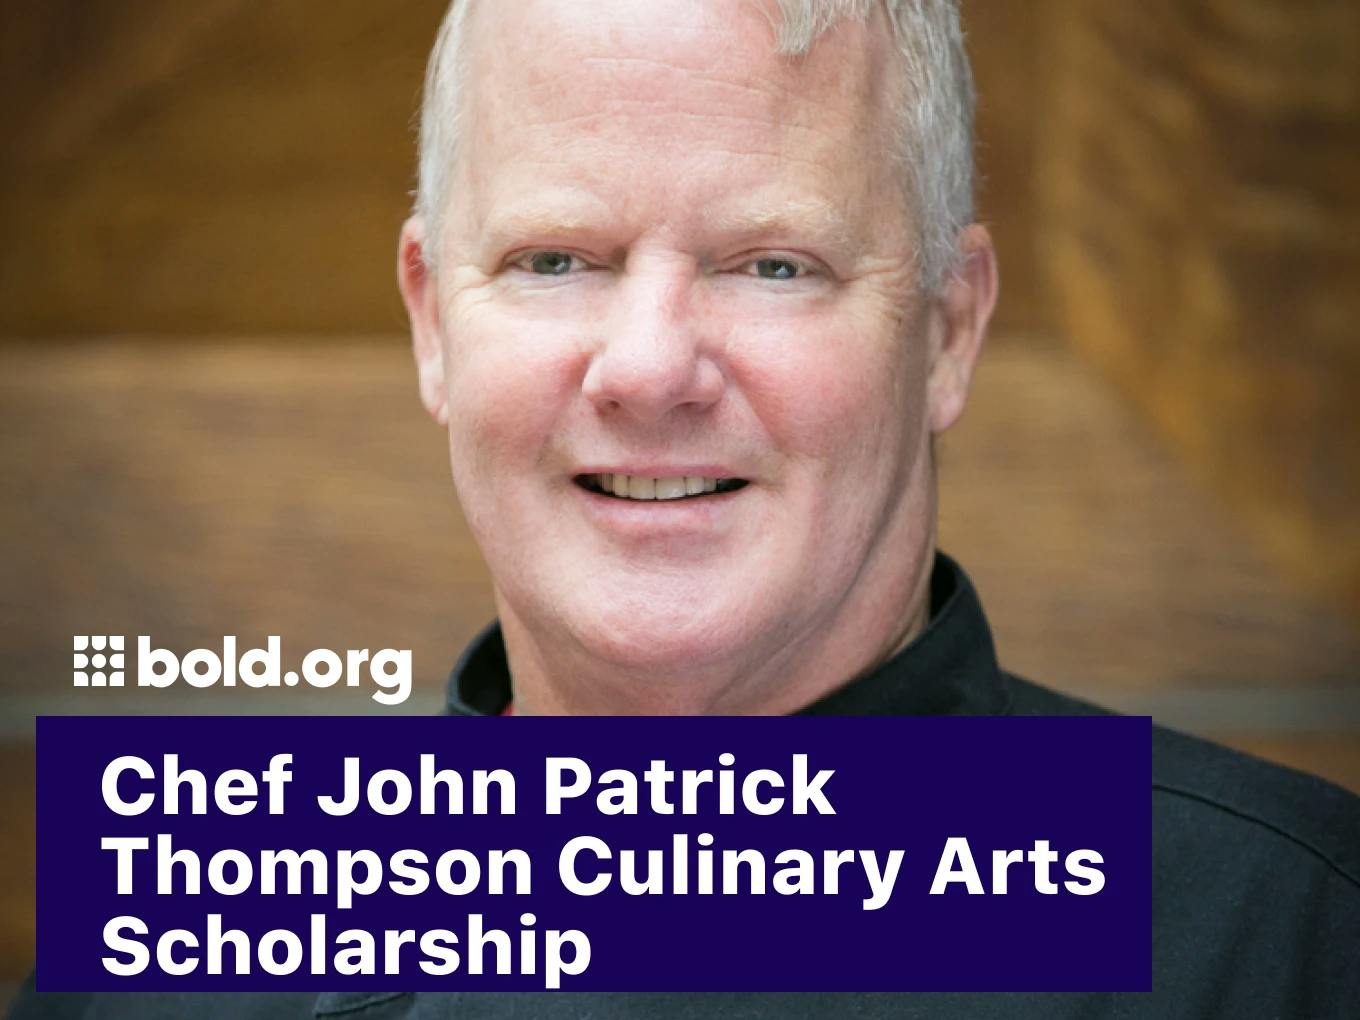 Chef John Patrick Thompson Culinary Arts Scholarship